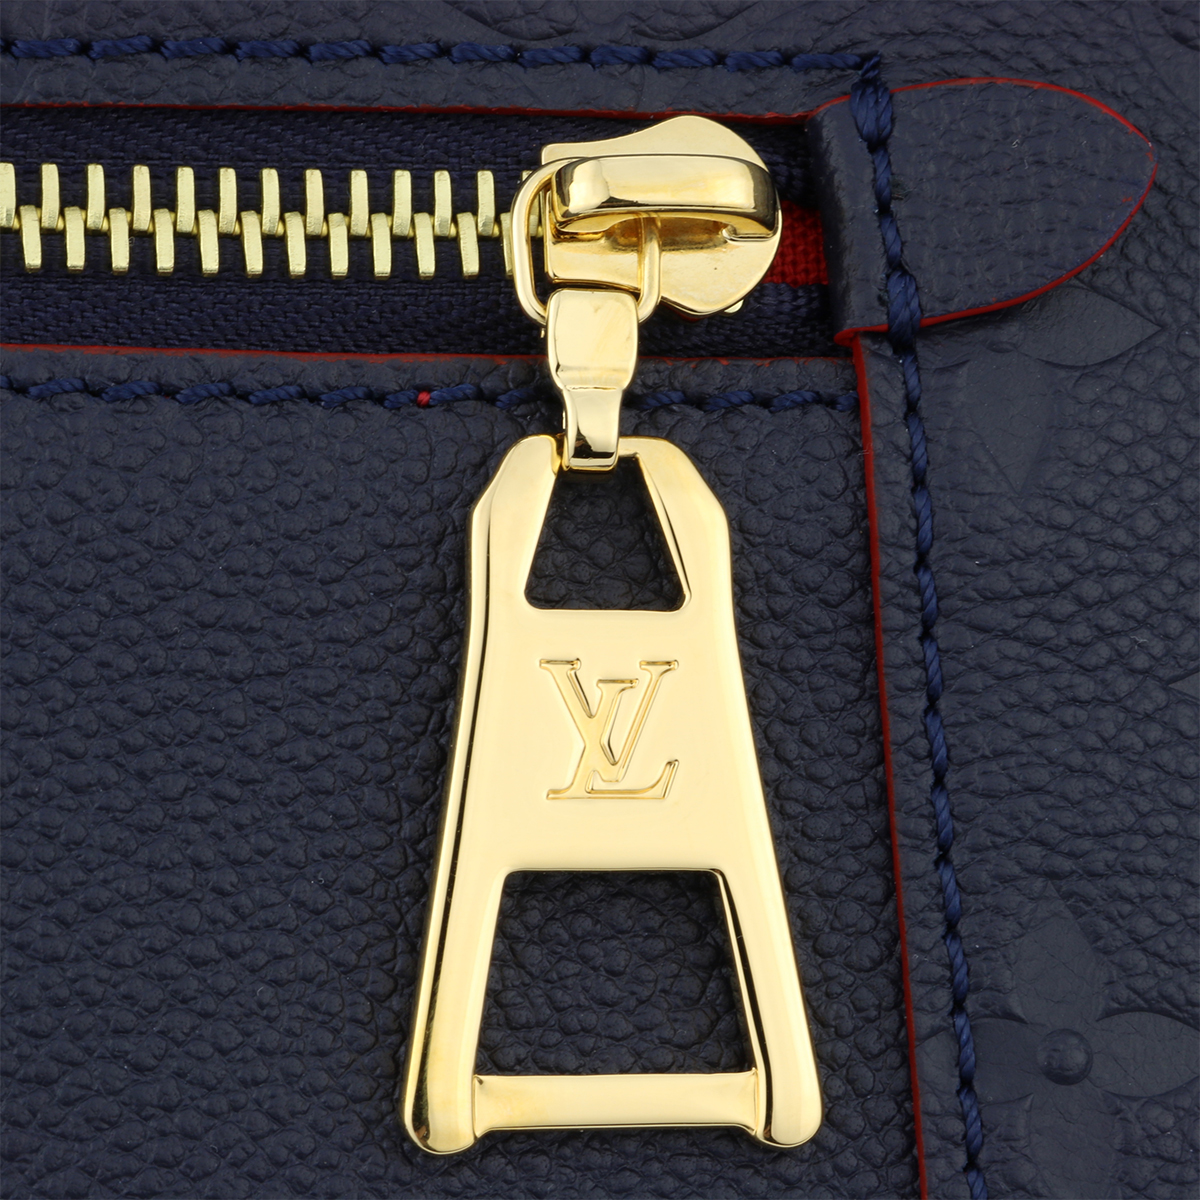 Louis Vuitton Empreinte Melie Marine Rouge 611539